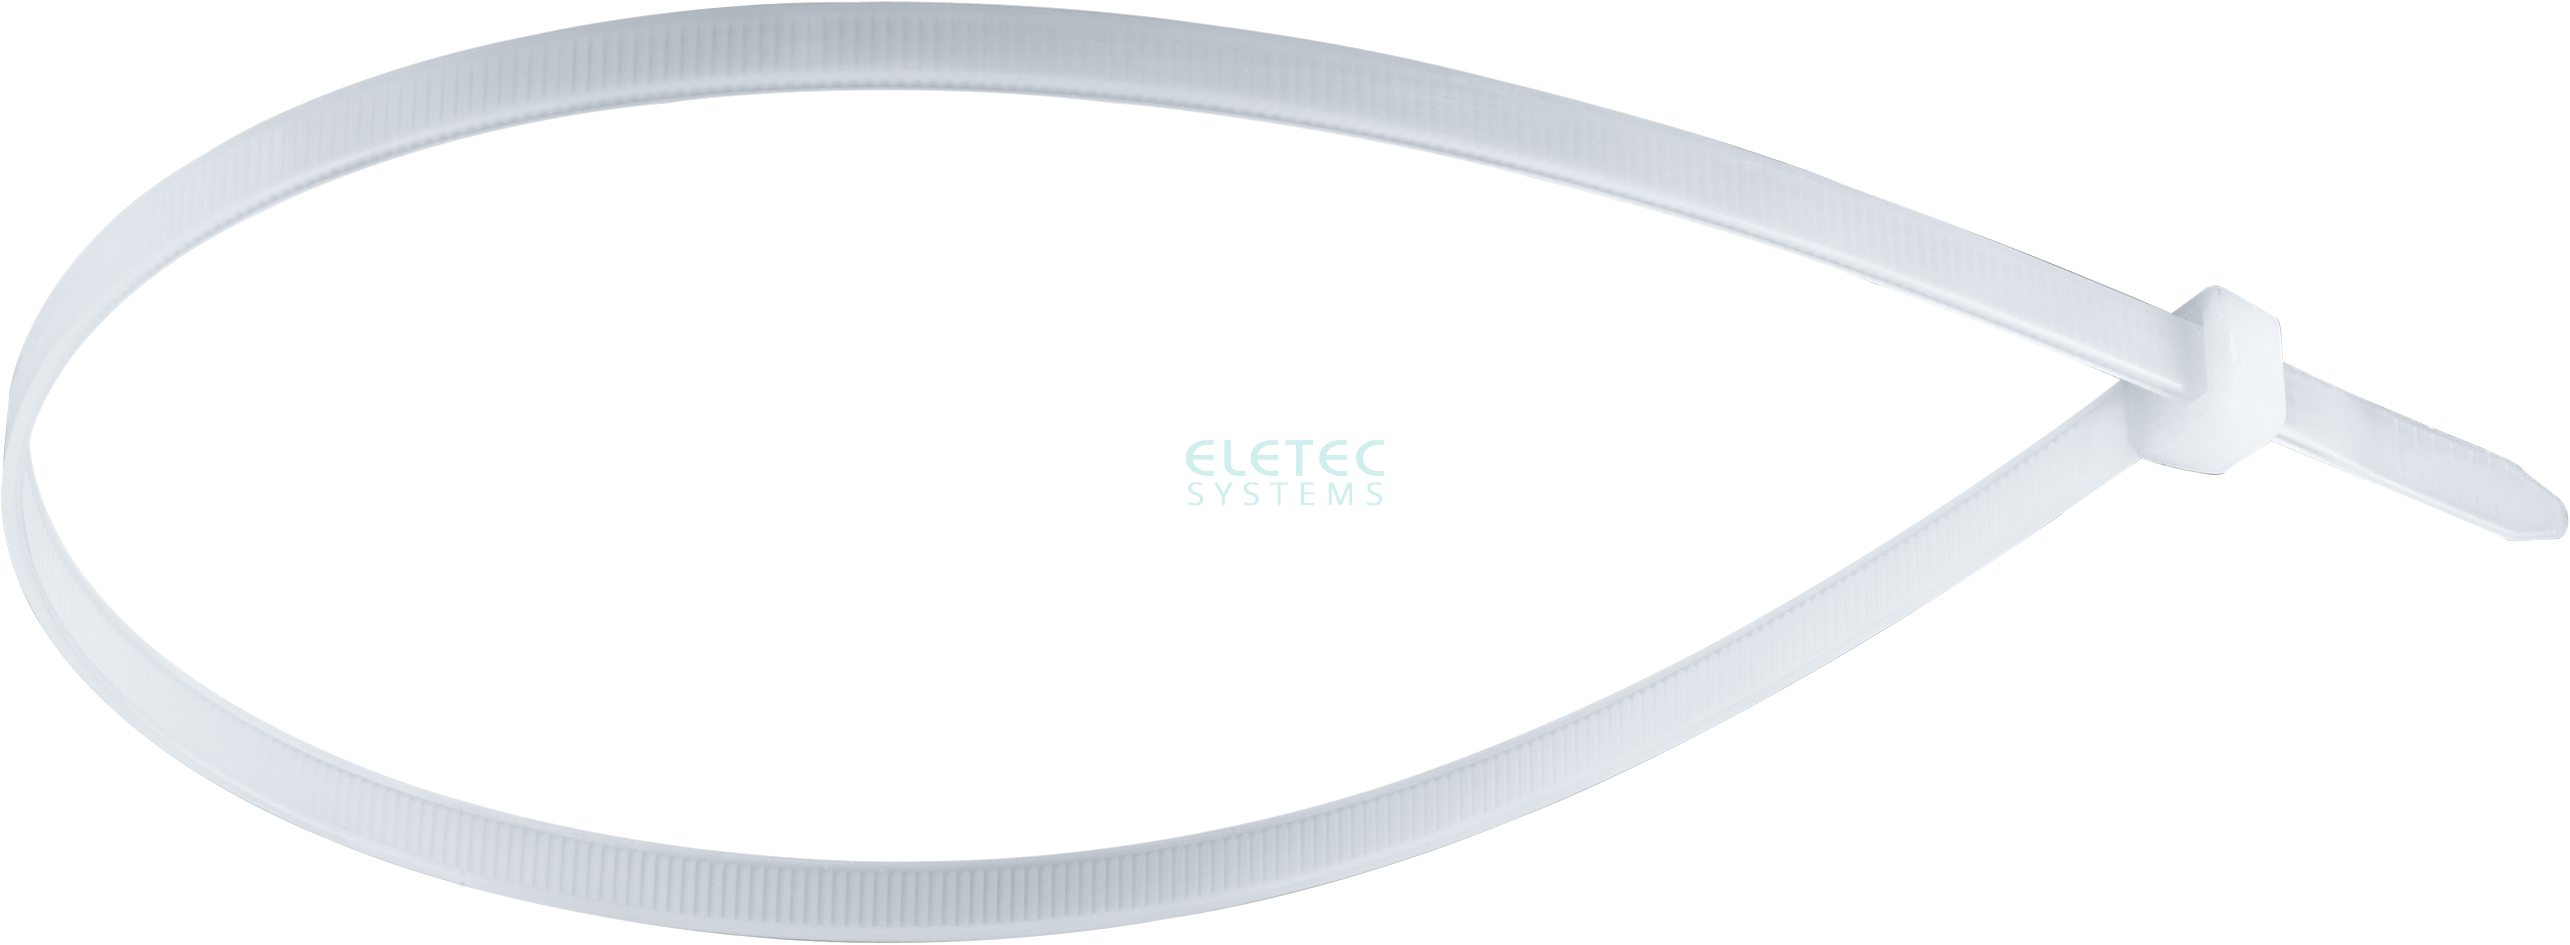 картинка Стяжка для кабеля 200х3,6 бесцветная (100 шт) Eletec Systems